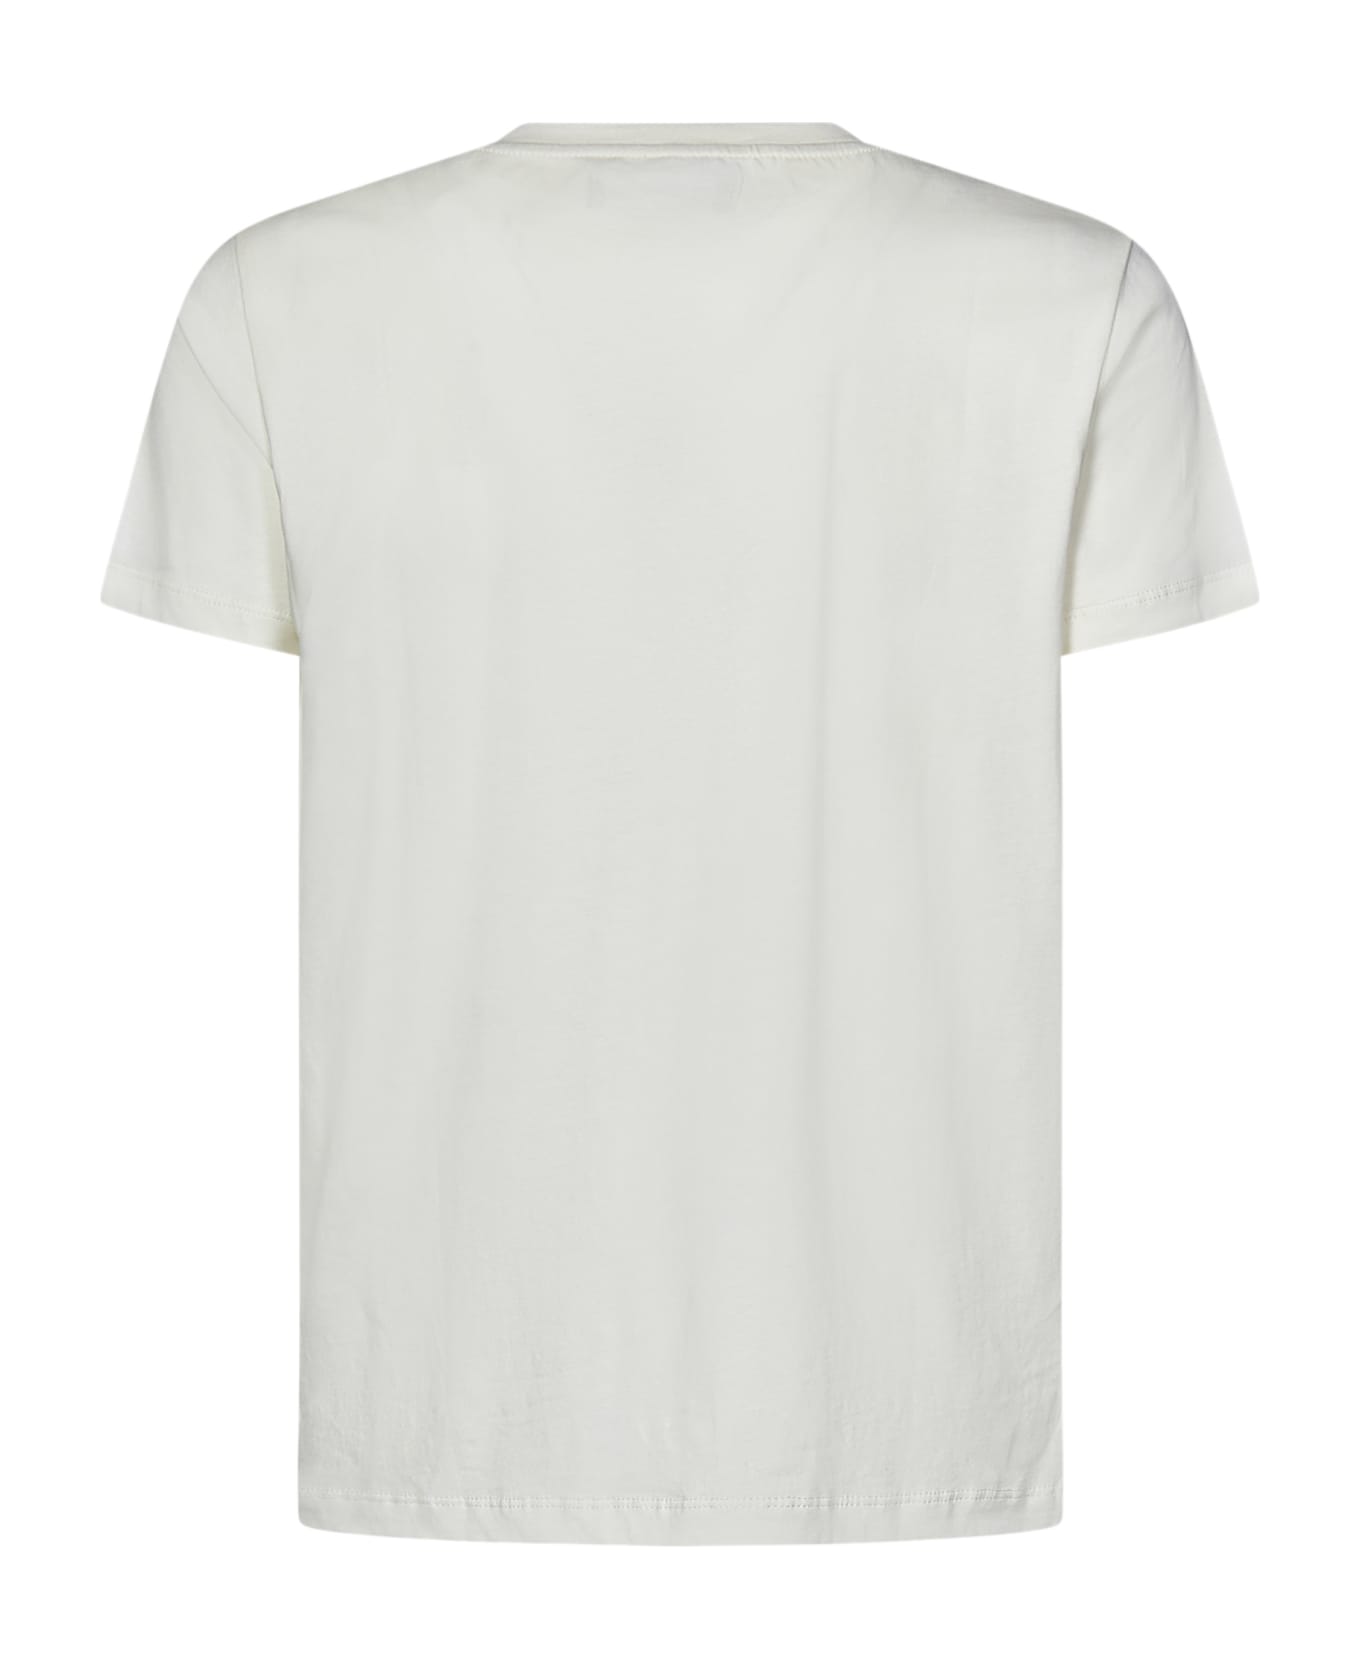 Vilebrequin T-shirt - White